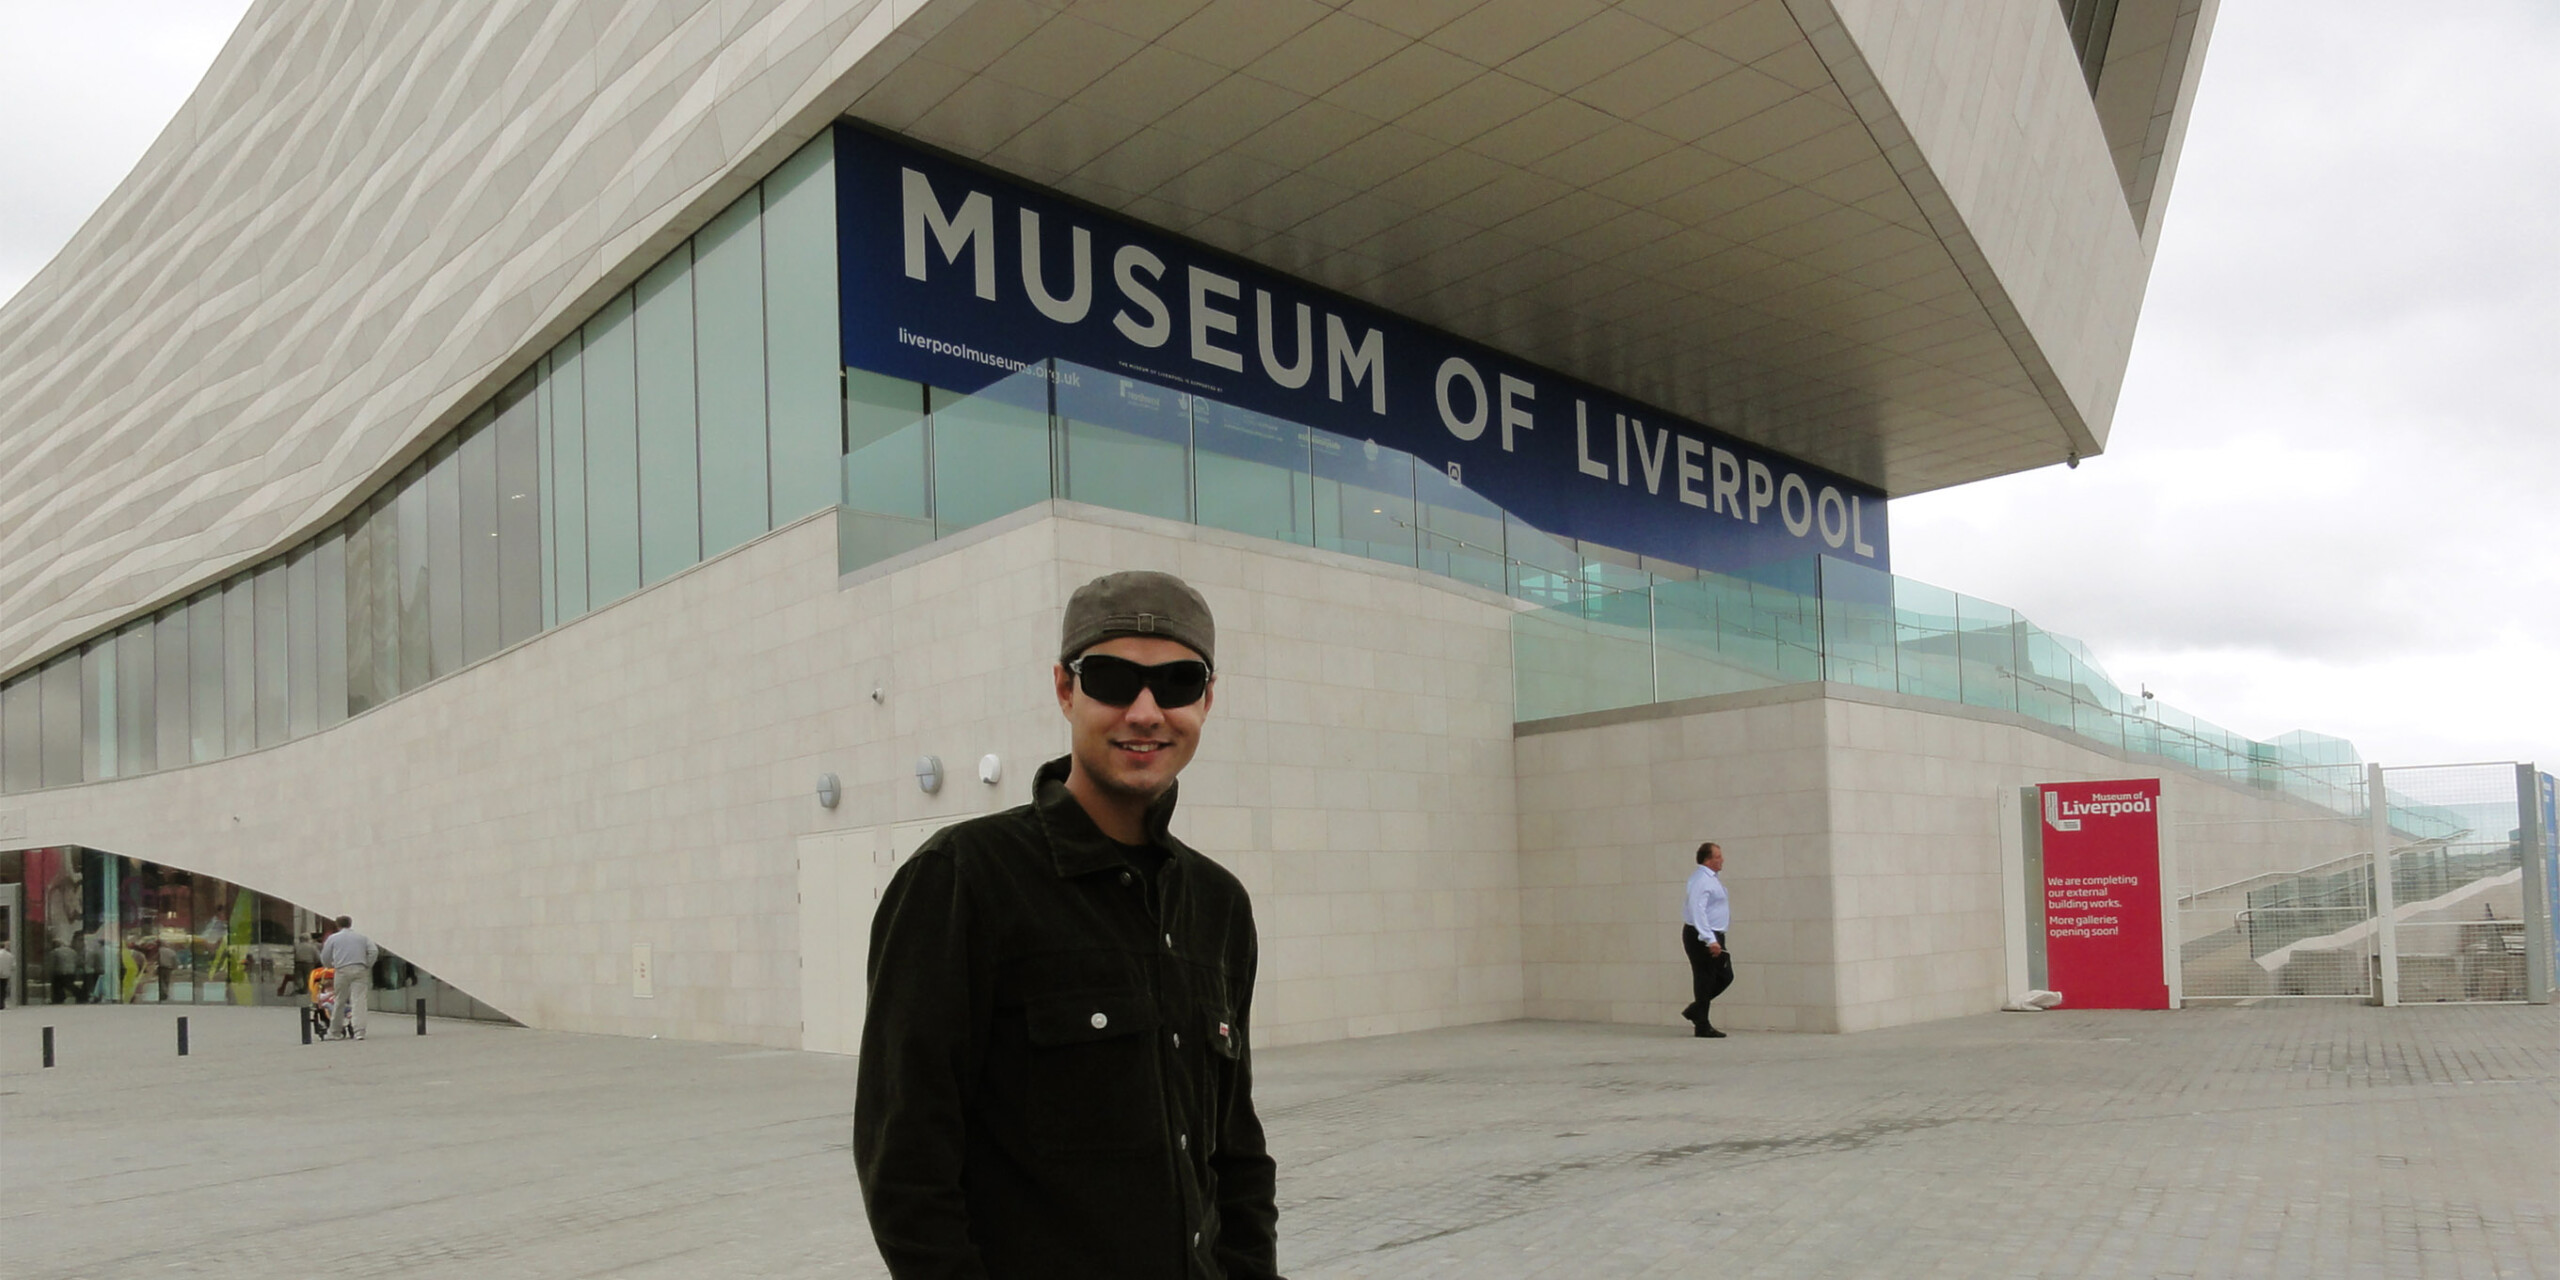 Entrada do Museu de Liverpool